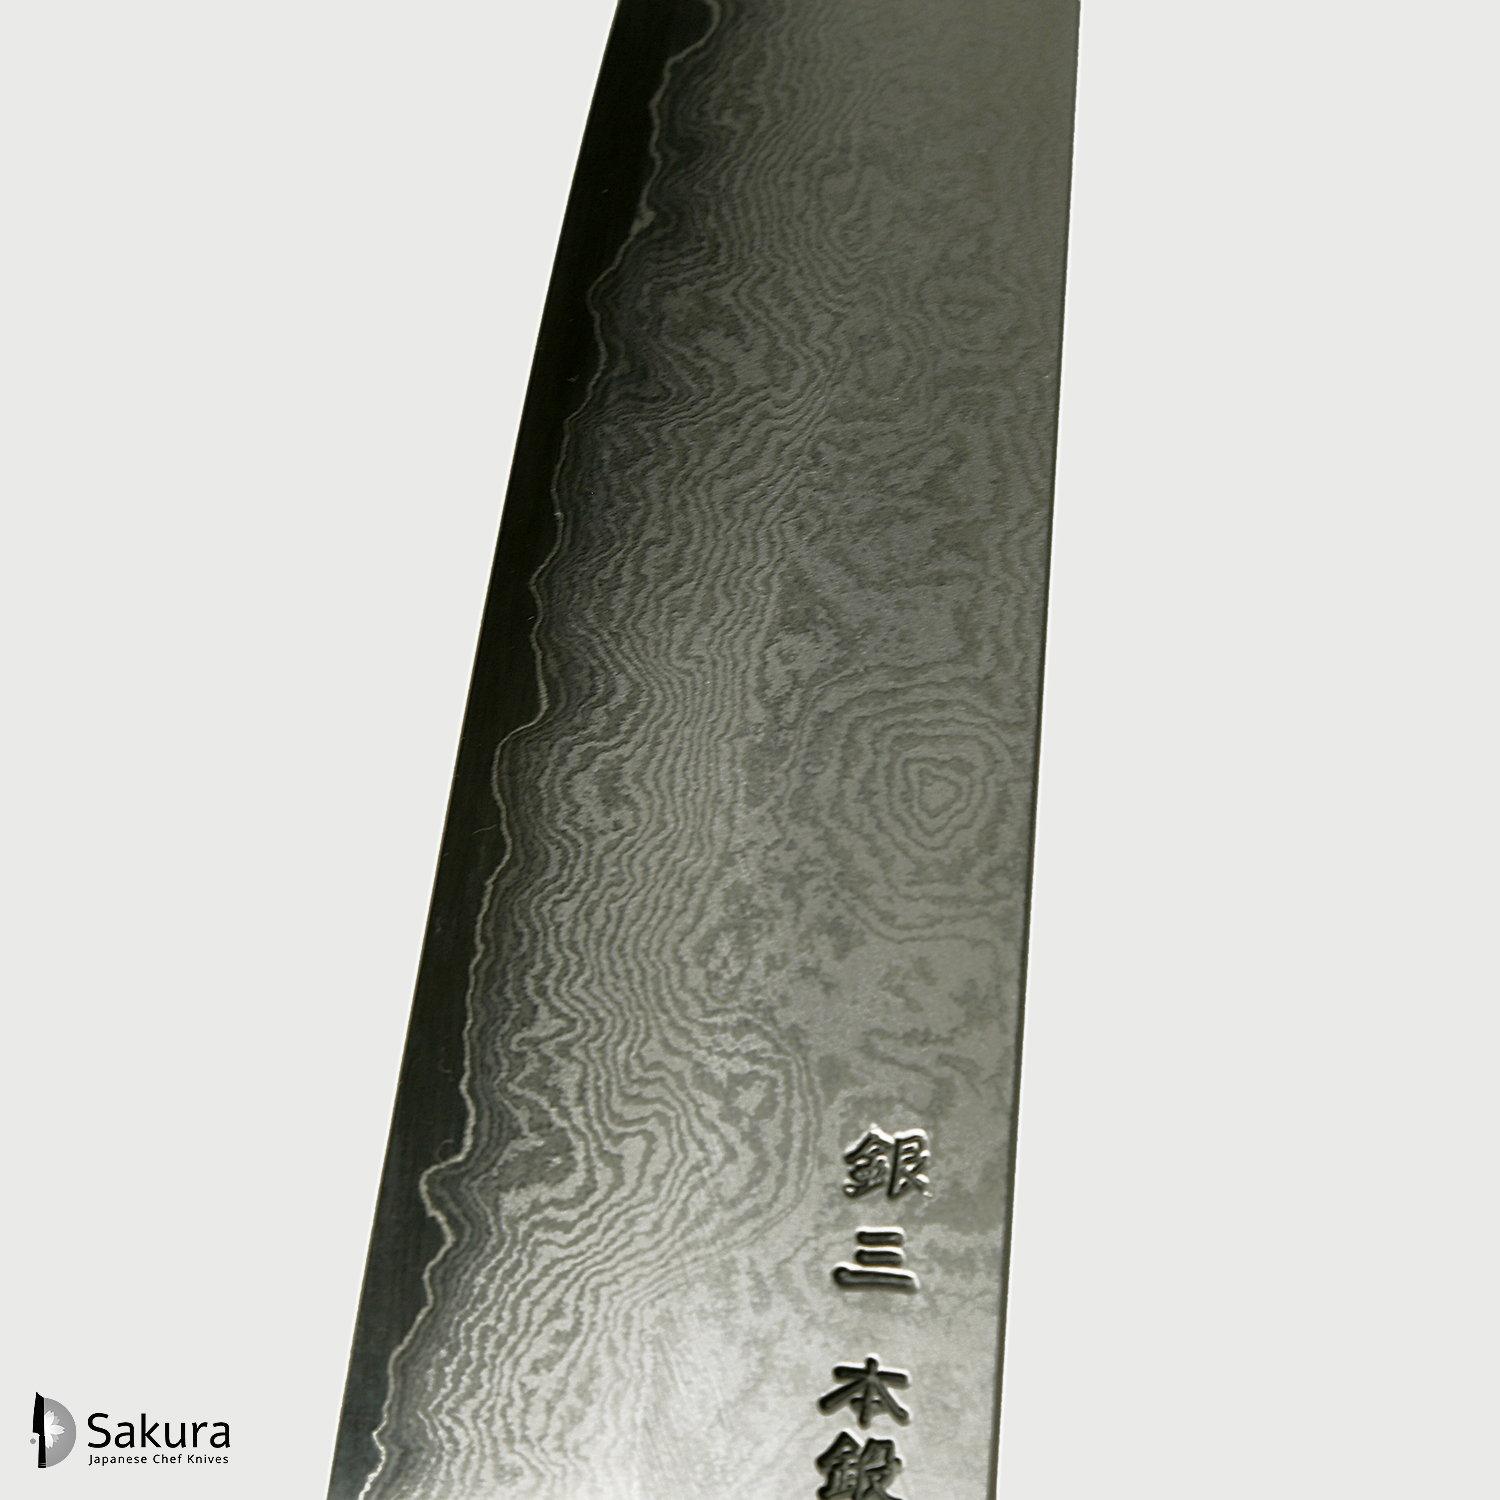 סכין רב-תכליתית בּוּנְקָה 180מ״מ מחושלת בעבודת יד 3 שכבות: פלדת פחמן יפנית מתקדמת מסוג Ginsan Silver#3 עטופה פלדת אל-חלד בגימור דמשק גימור דמשק האדו יפן (SKHAD100007518)